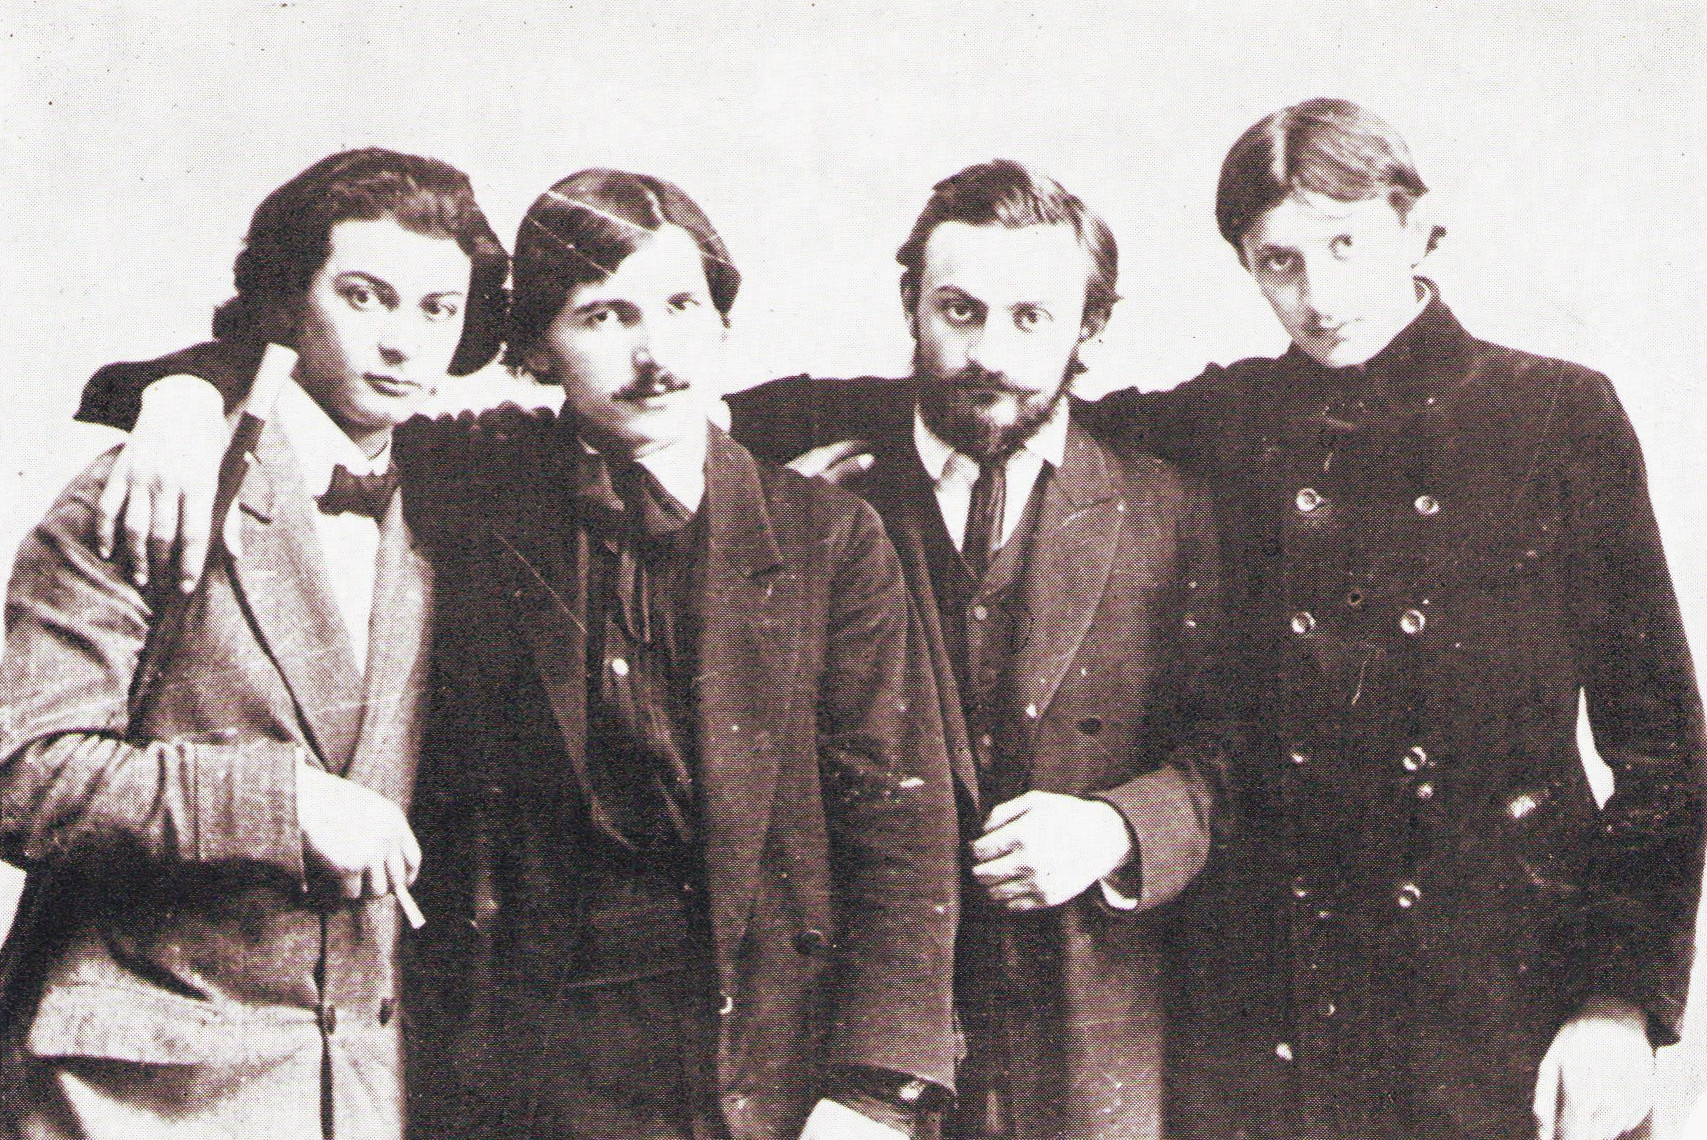 Zdjęcie grupowe studentów ASP w Krakowie, od lewej: Mojżesz Kisling, Szmaj Mondszejn, Jan Wacław Zawadowski, Jan Hrynkowski, źródło: "Polskie życie artystyczne 1890-1914"